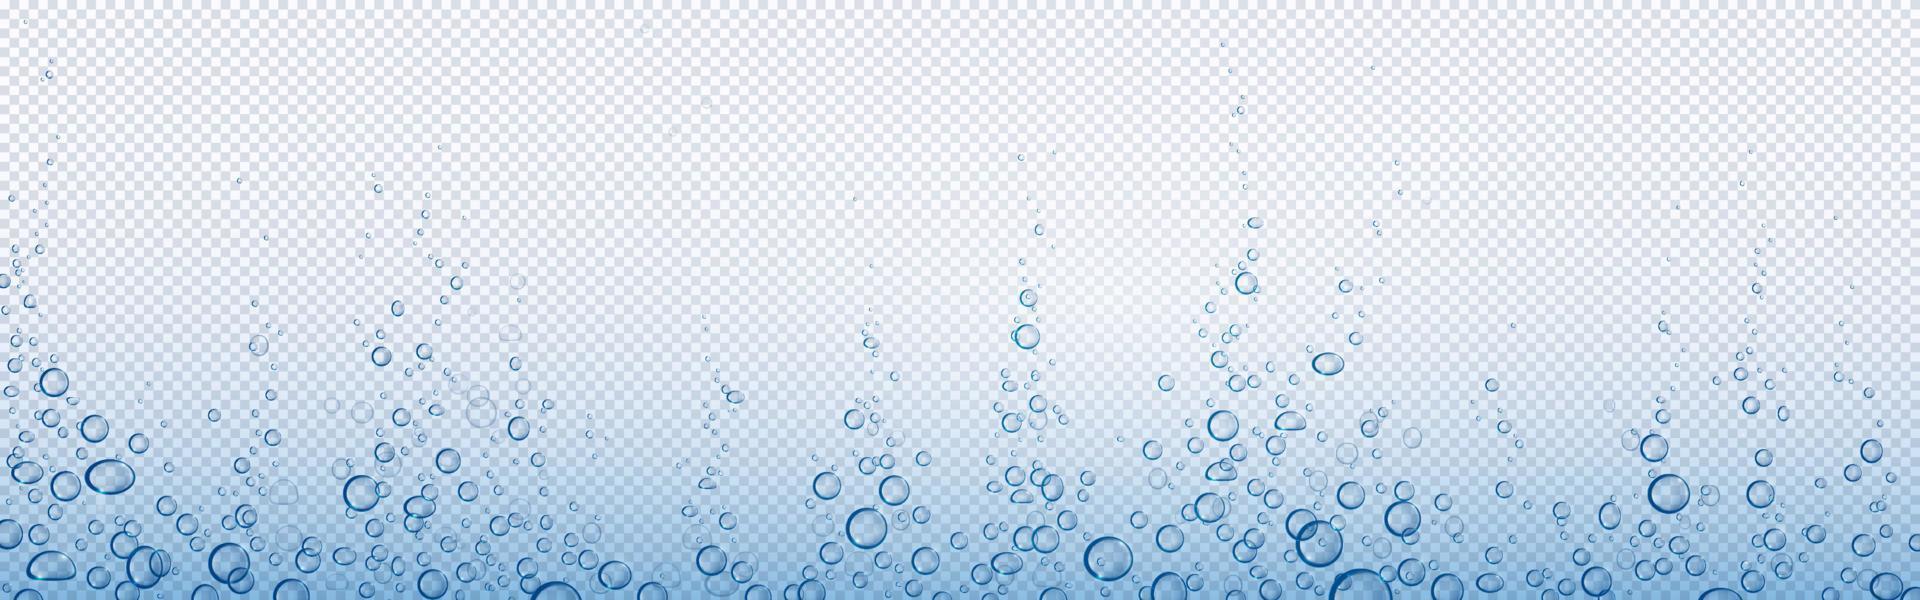 soda bubblor, vatten eller syre luft fräsa, vektor